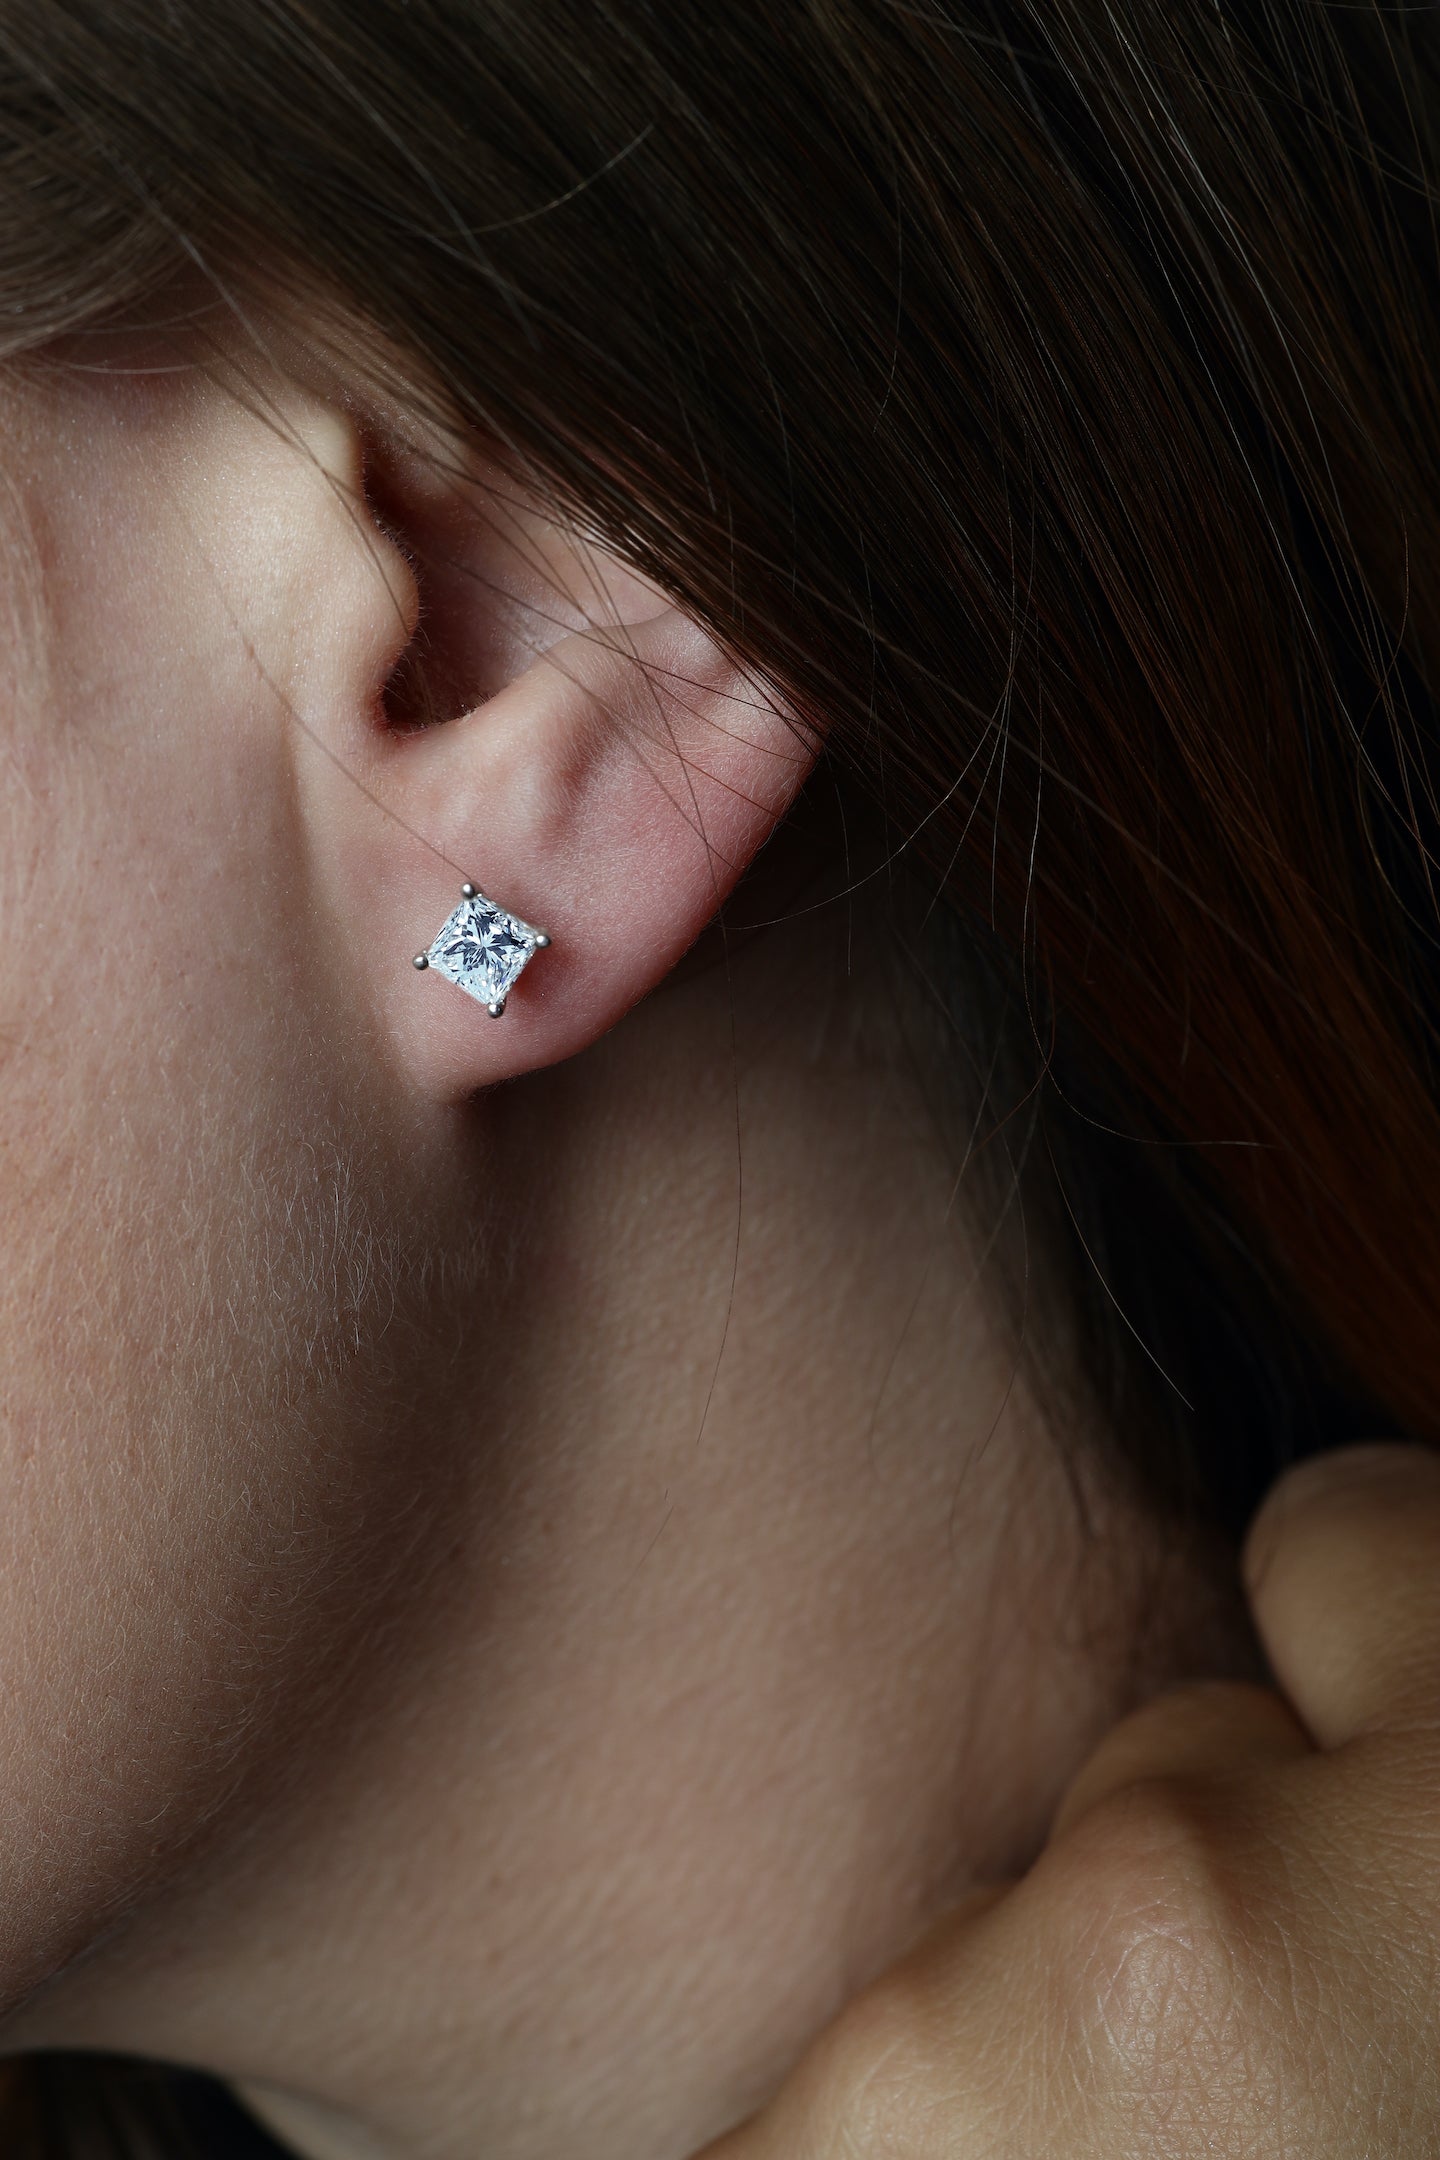 1.42 ctw Princess Cut Diamond Stud Earrings